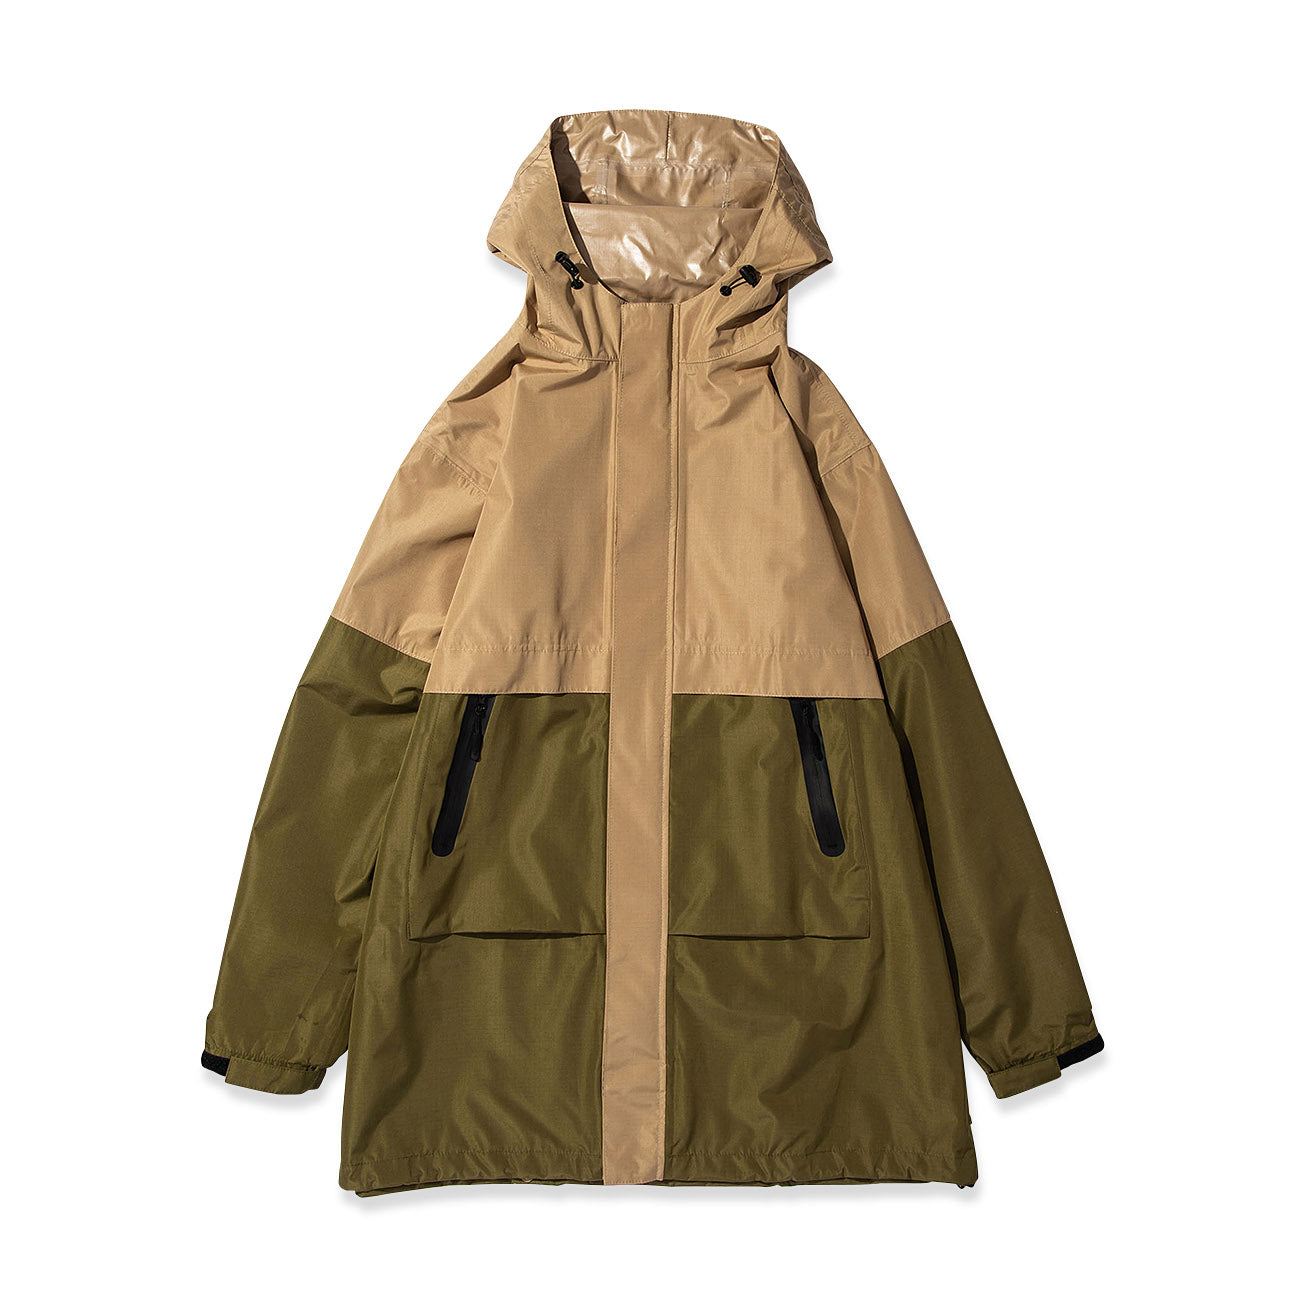 Kiu Colorblock Foldable Rain Jacket - Green/ Khaki – MoMA Design Store